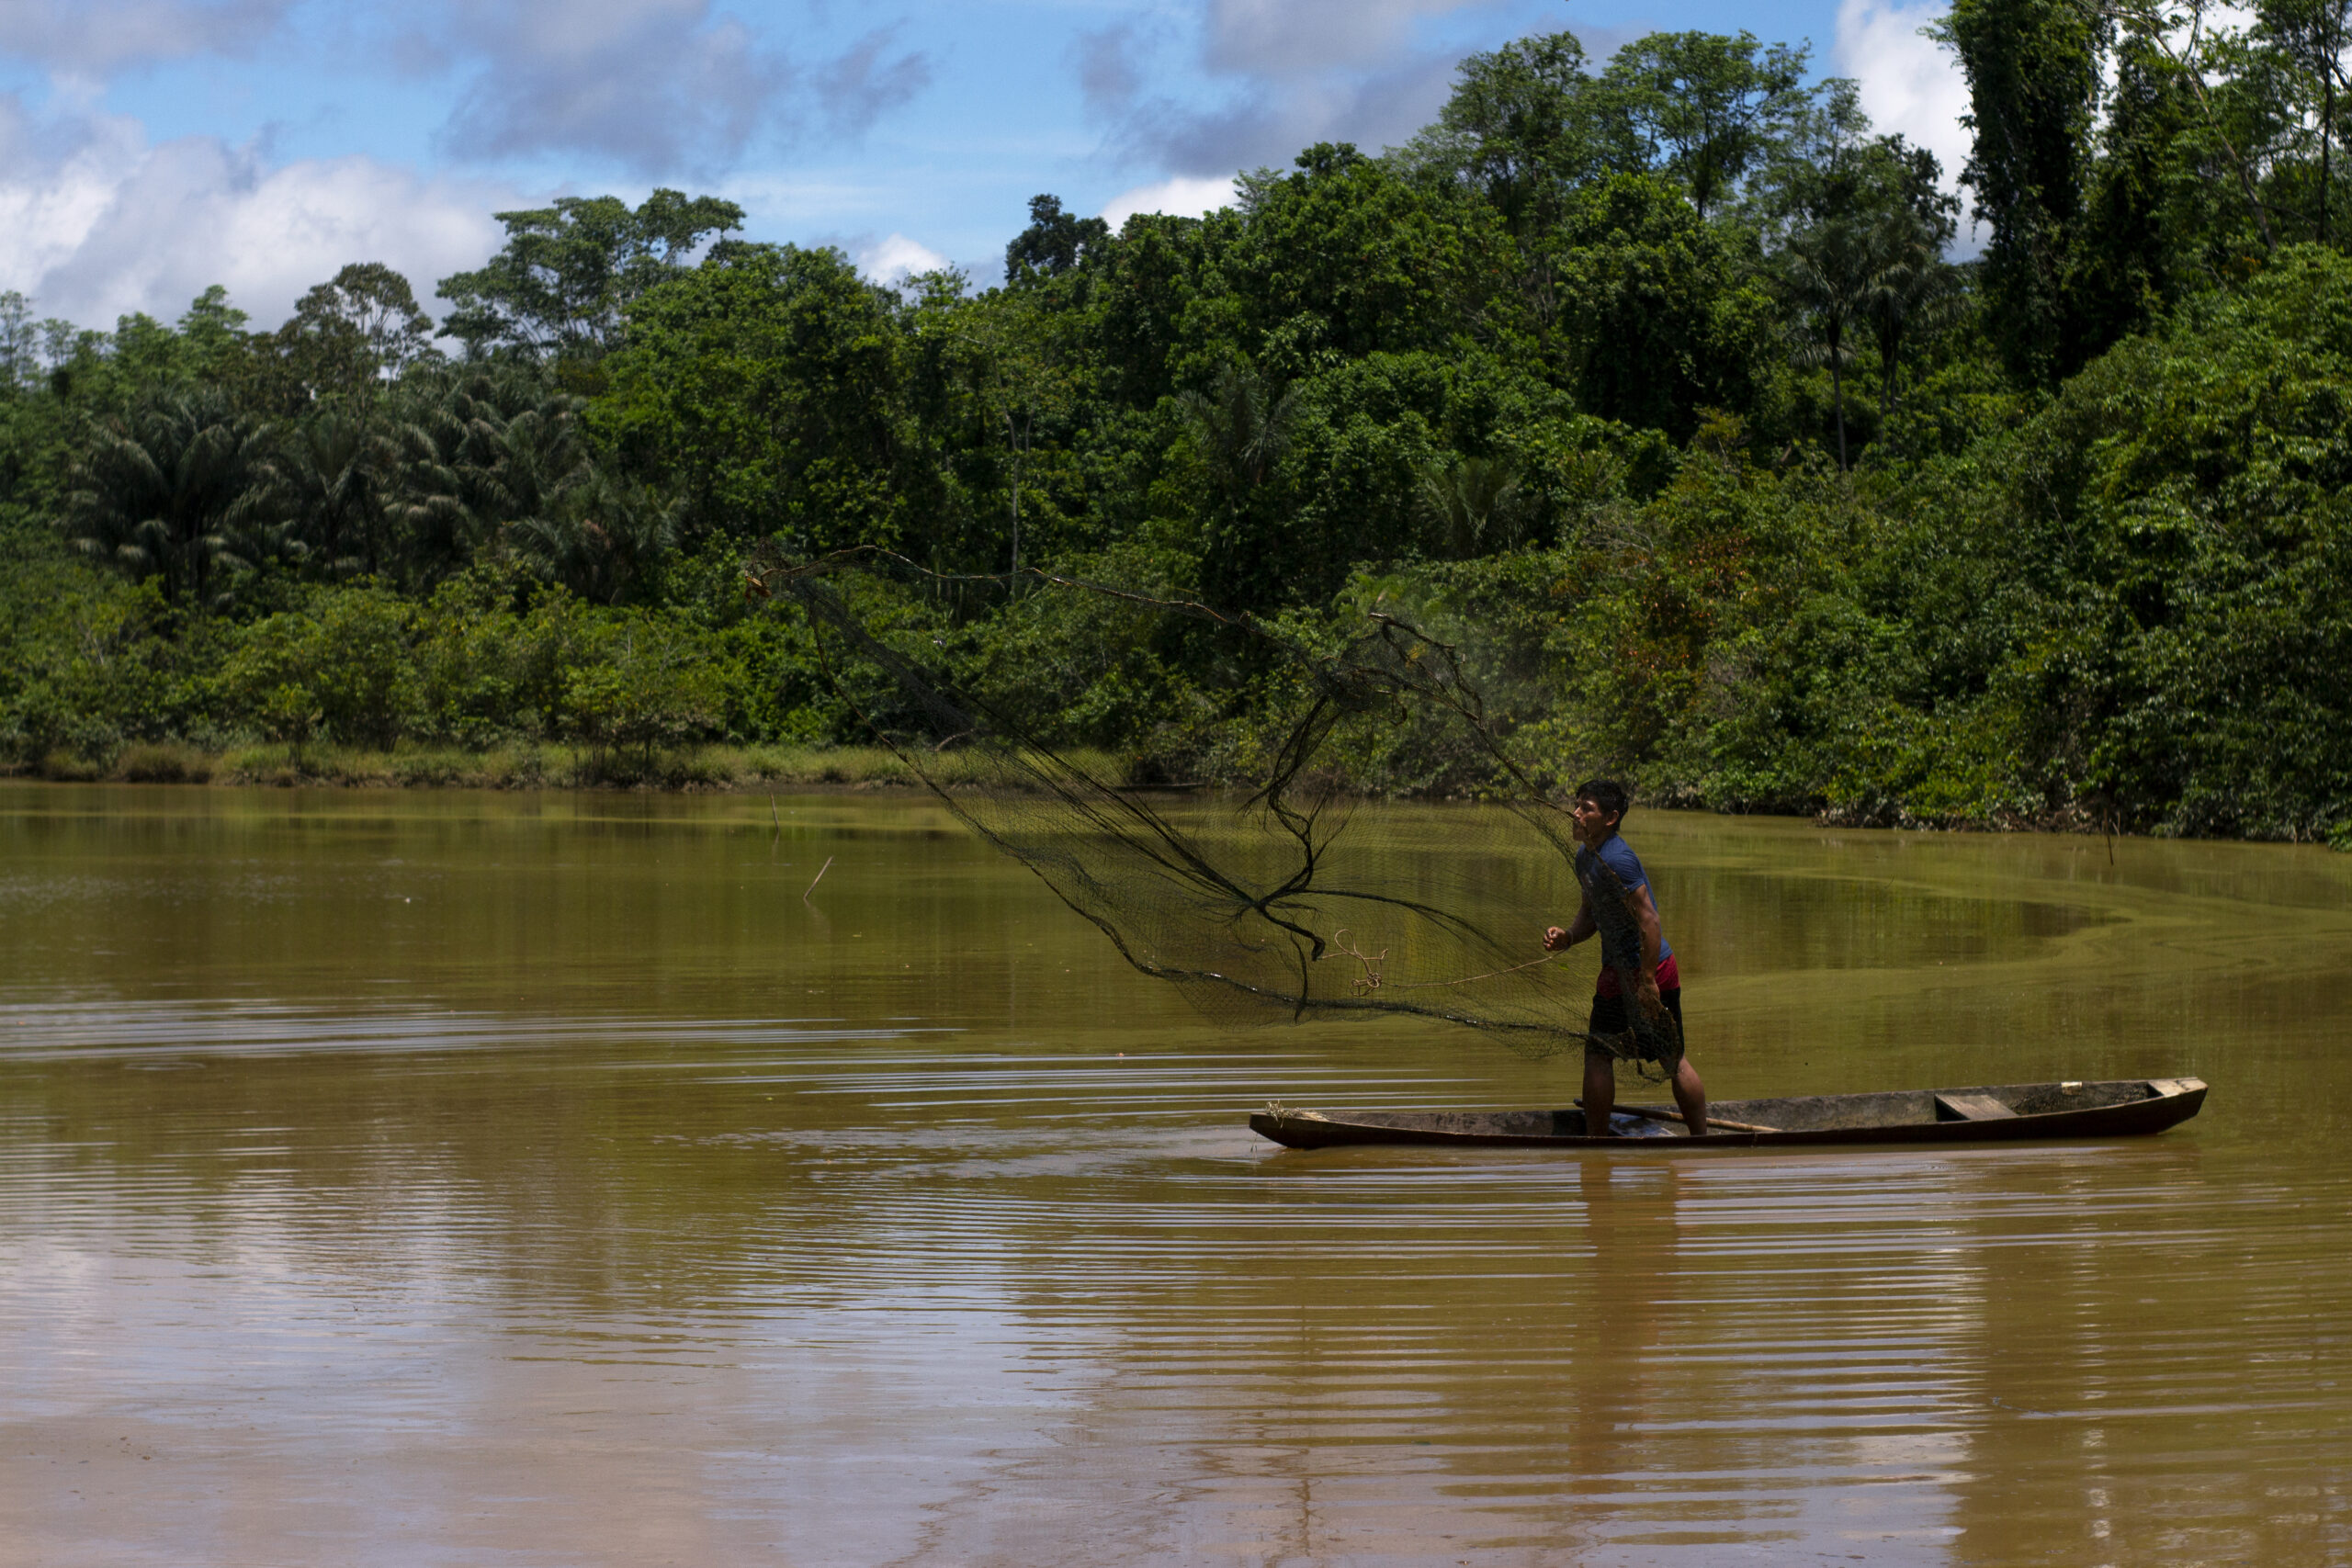 Jeunes autochtones du peuple Kapanawa du Pérou pêchant dans la rivière avec un canoë et des filets traditionnels. 
Gagnants du Concours Photo “Solutions Innovatrices des Peuples Autochtones”
Nom de la photo : Pêcheur Kapanawa. Auteur : Patrick Murayar